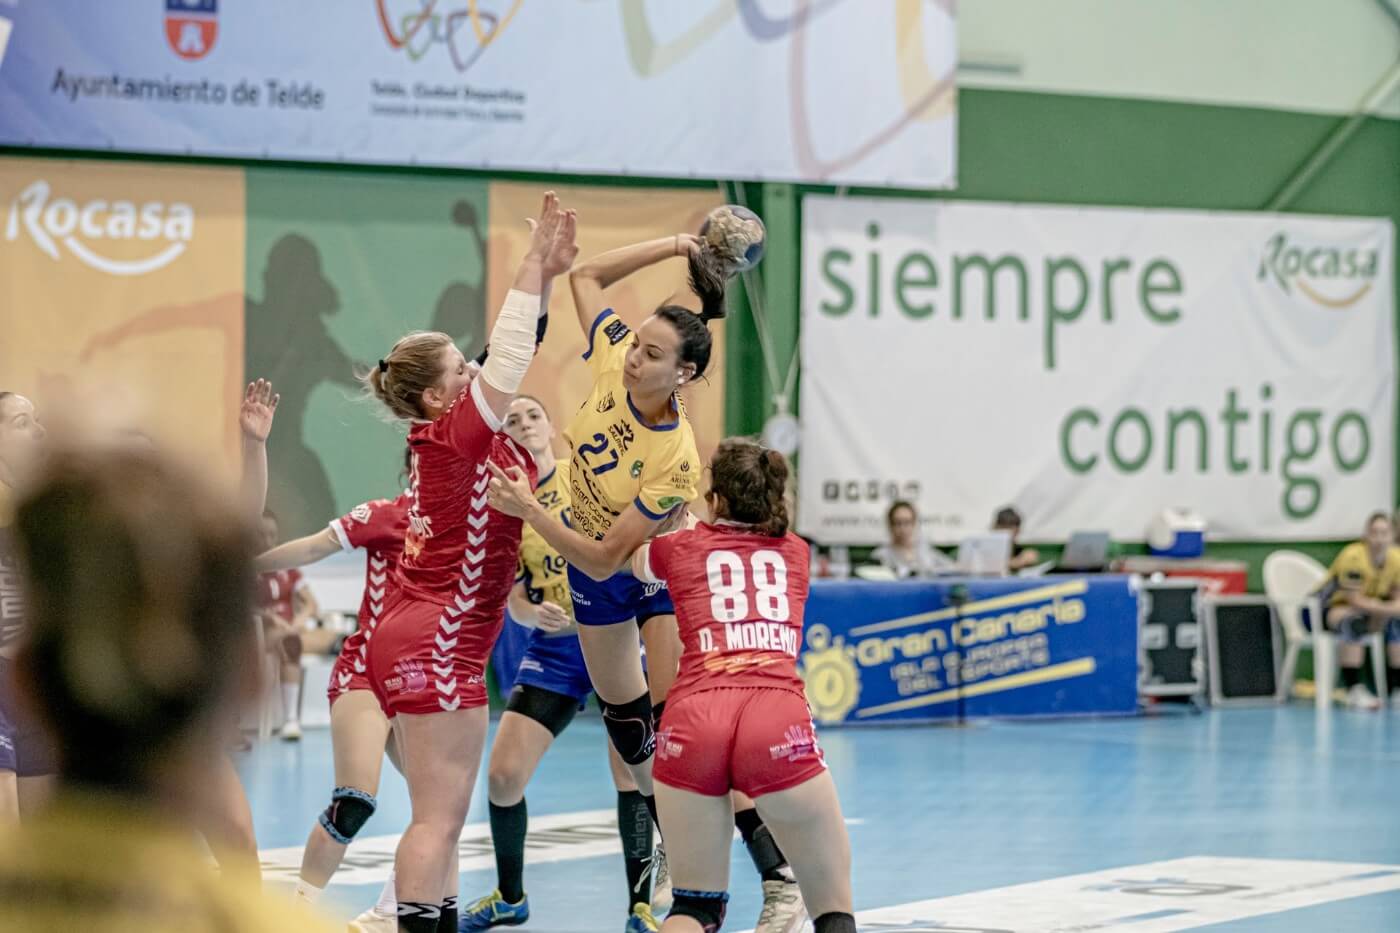 El Rocasa Gran Canaria revalida su título de campeón de la Liga Territorial Femenina de Canarias 2019 - 2020